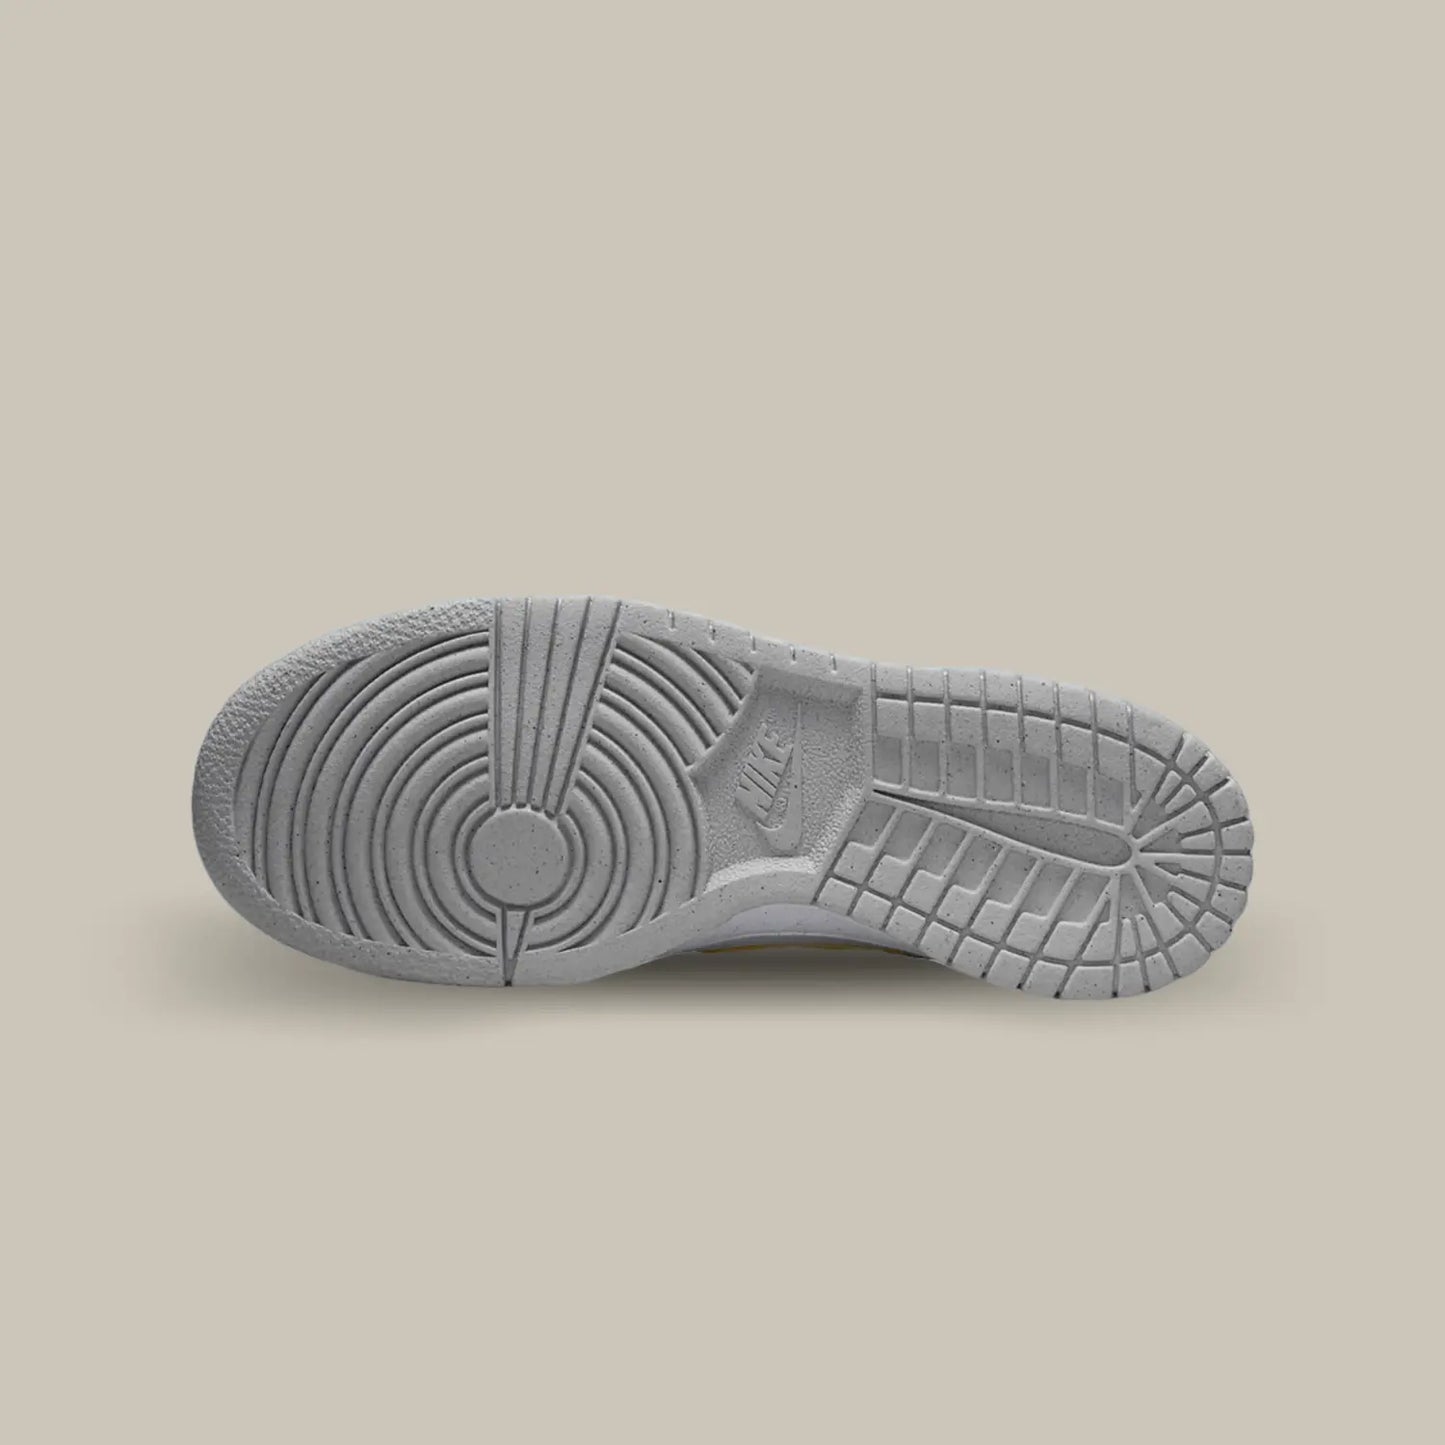 La semelle de la Nike Dunk Low Homer Simpson de couleur grise.